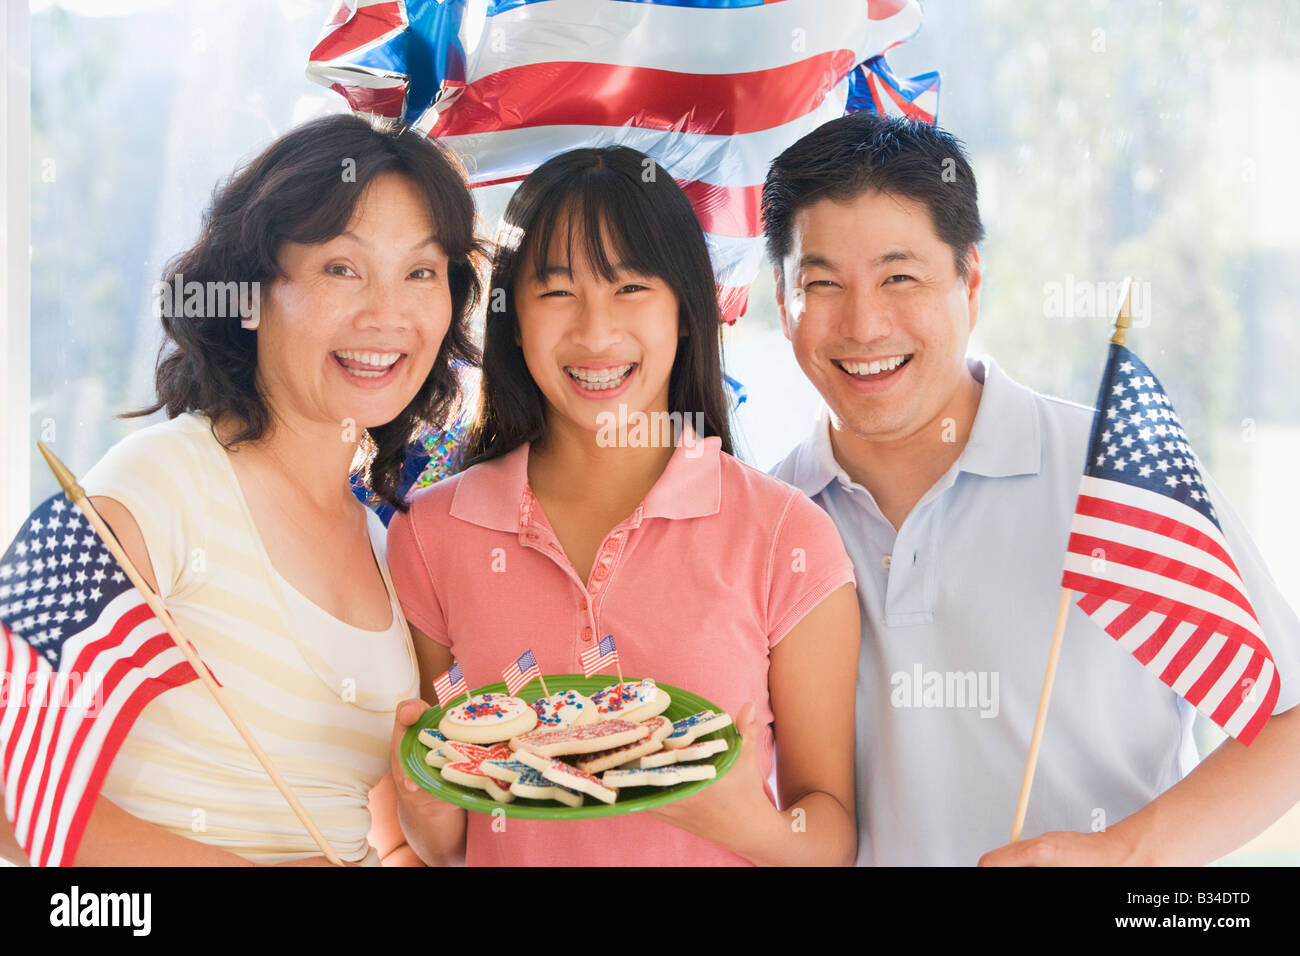 Famiglia all'aperto sul quarto di luglio con bandiere e cookie sorridente Foto Stock